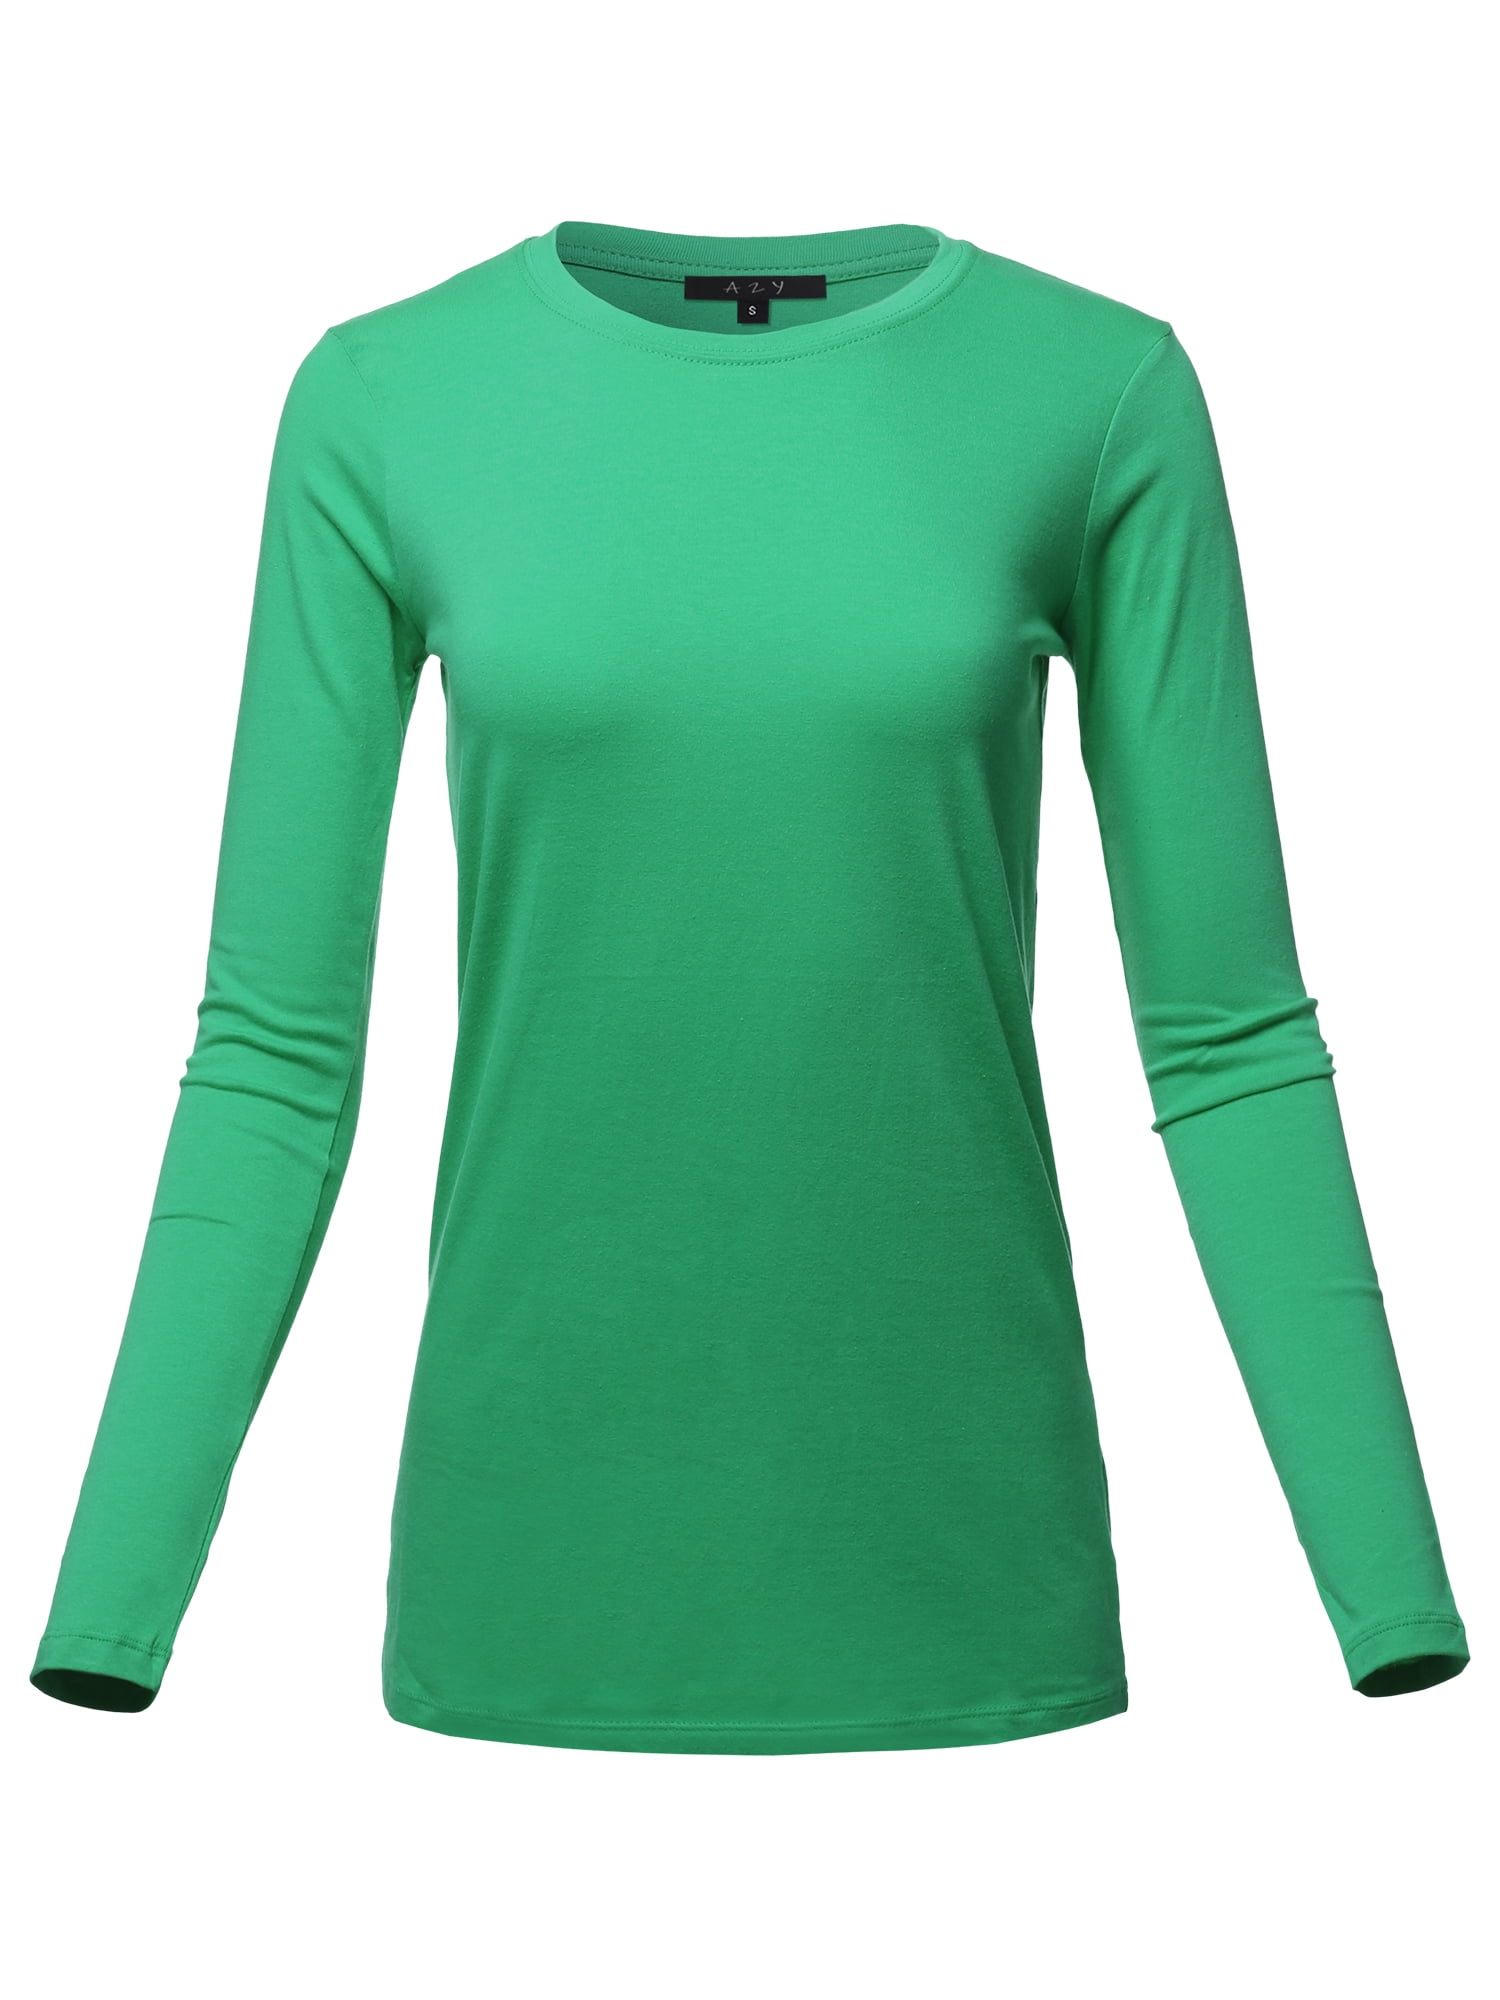 Women's Green Long Sleeve Shirts